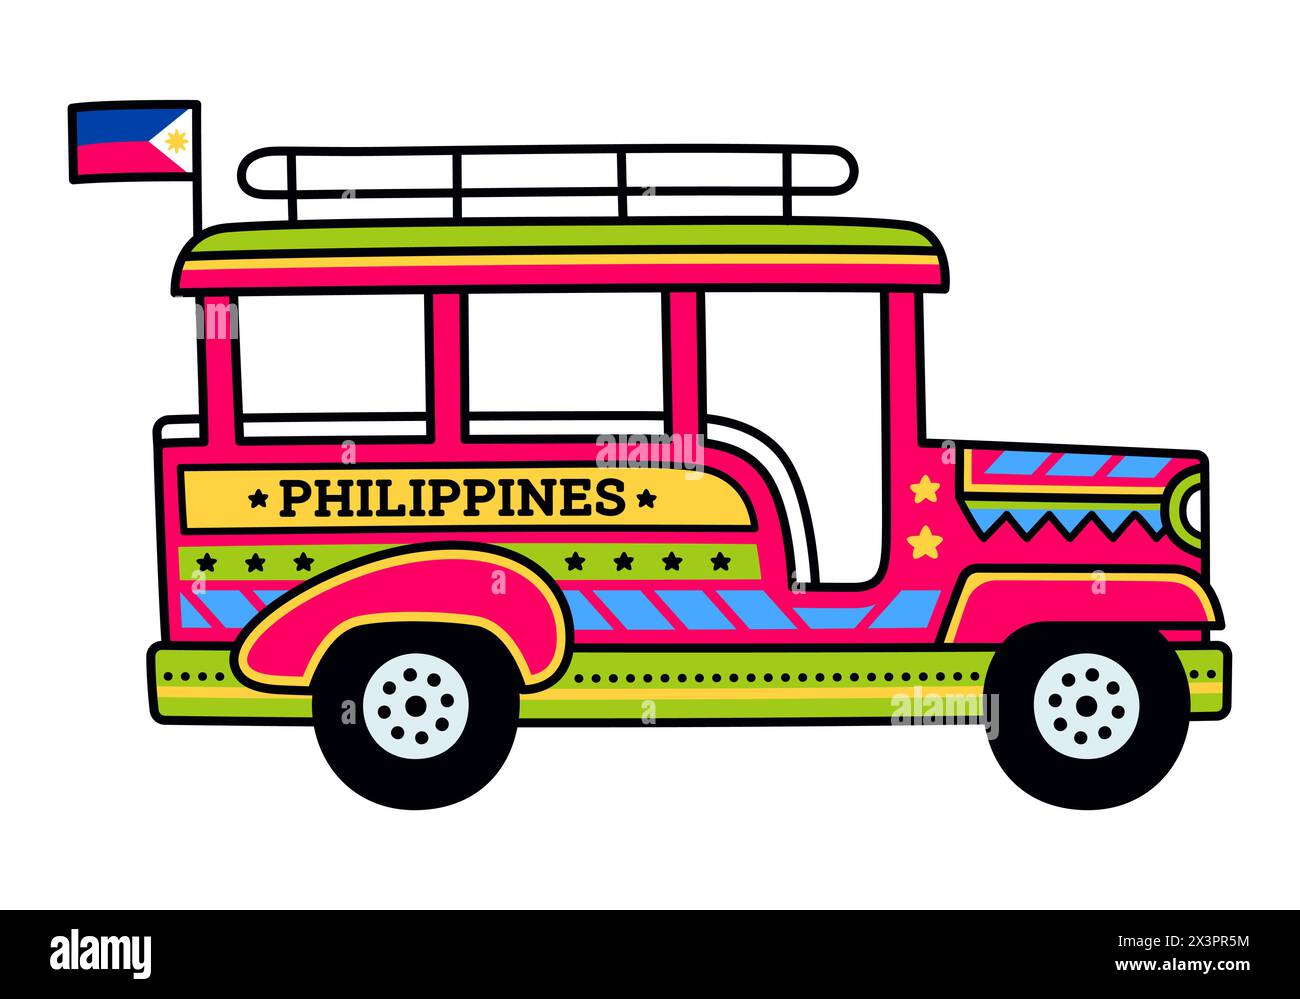 Jeepney, traditionelle öffentliche Verkehrsmittel auf den Philippinen. Helle gemalte Bus Taxi Zeichentrickzeichnung, Vektorillustration. Stock Vektor